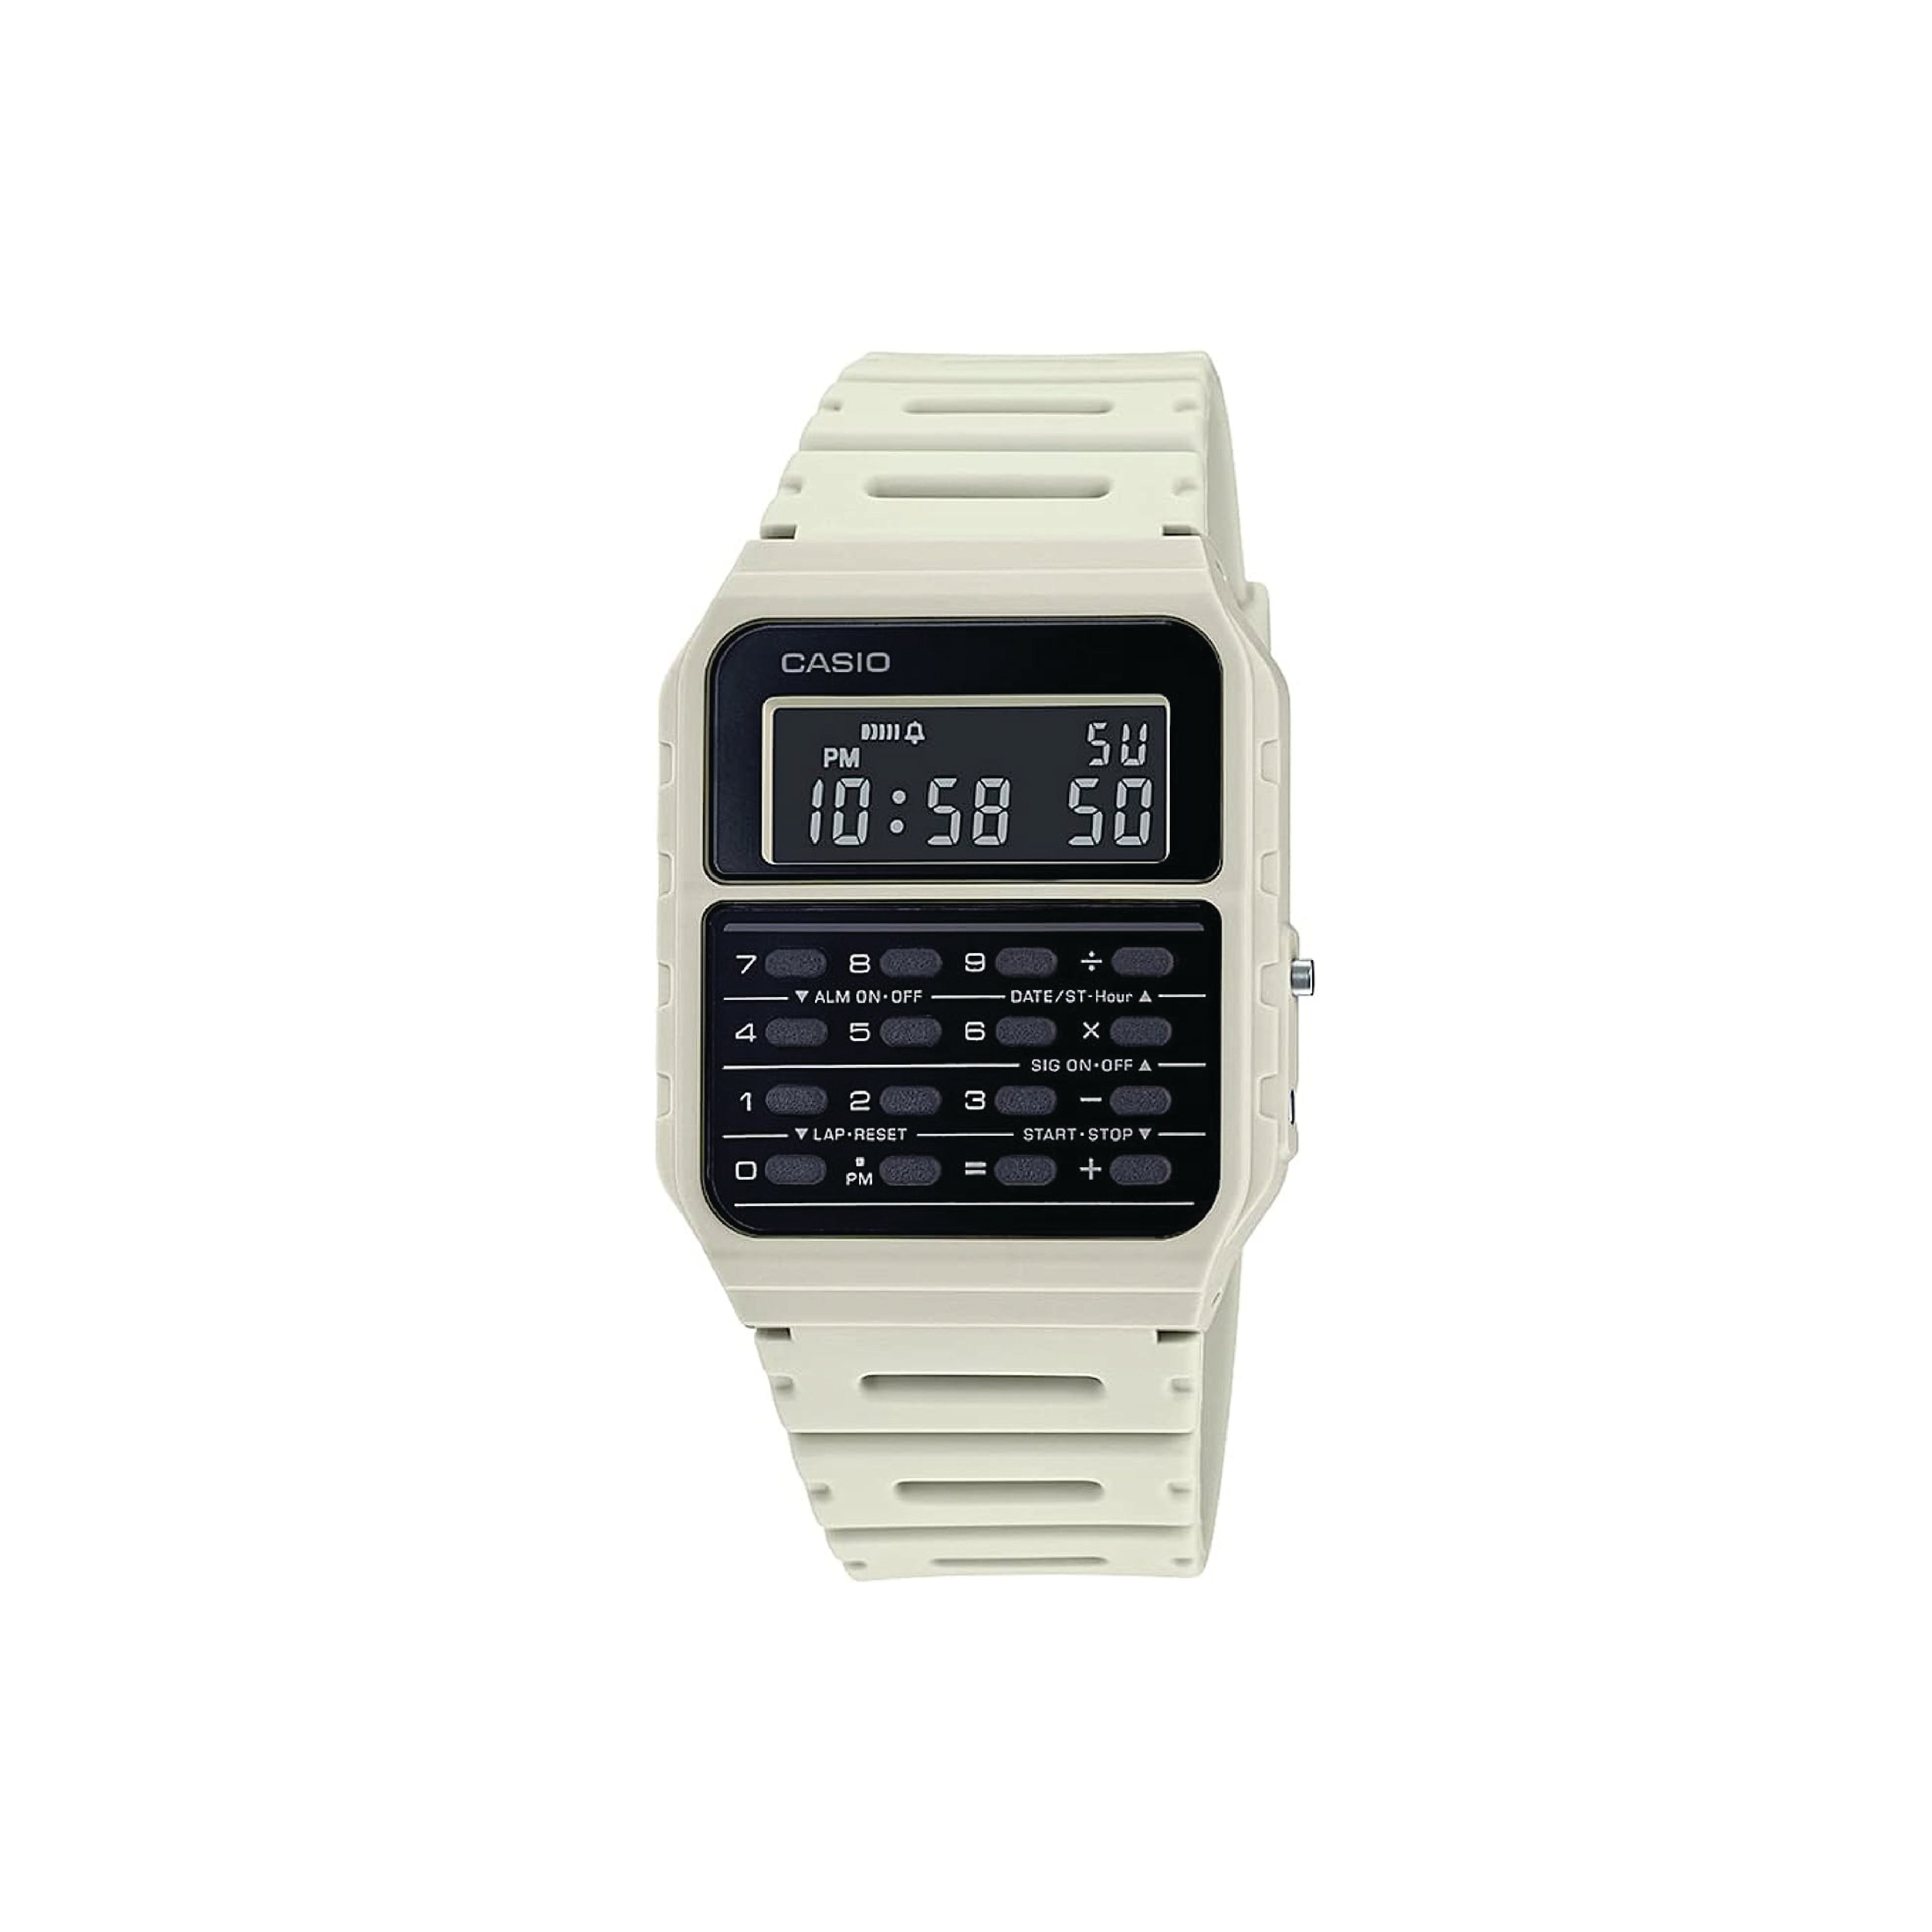 Casio CA-53WF-8B Calculator Beige Digital Mens Watch Clas New Original